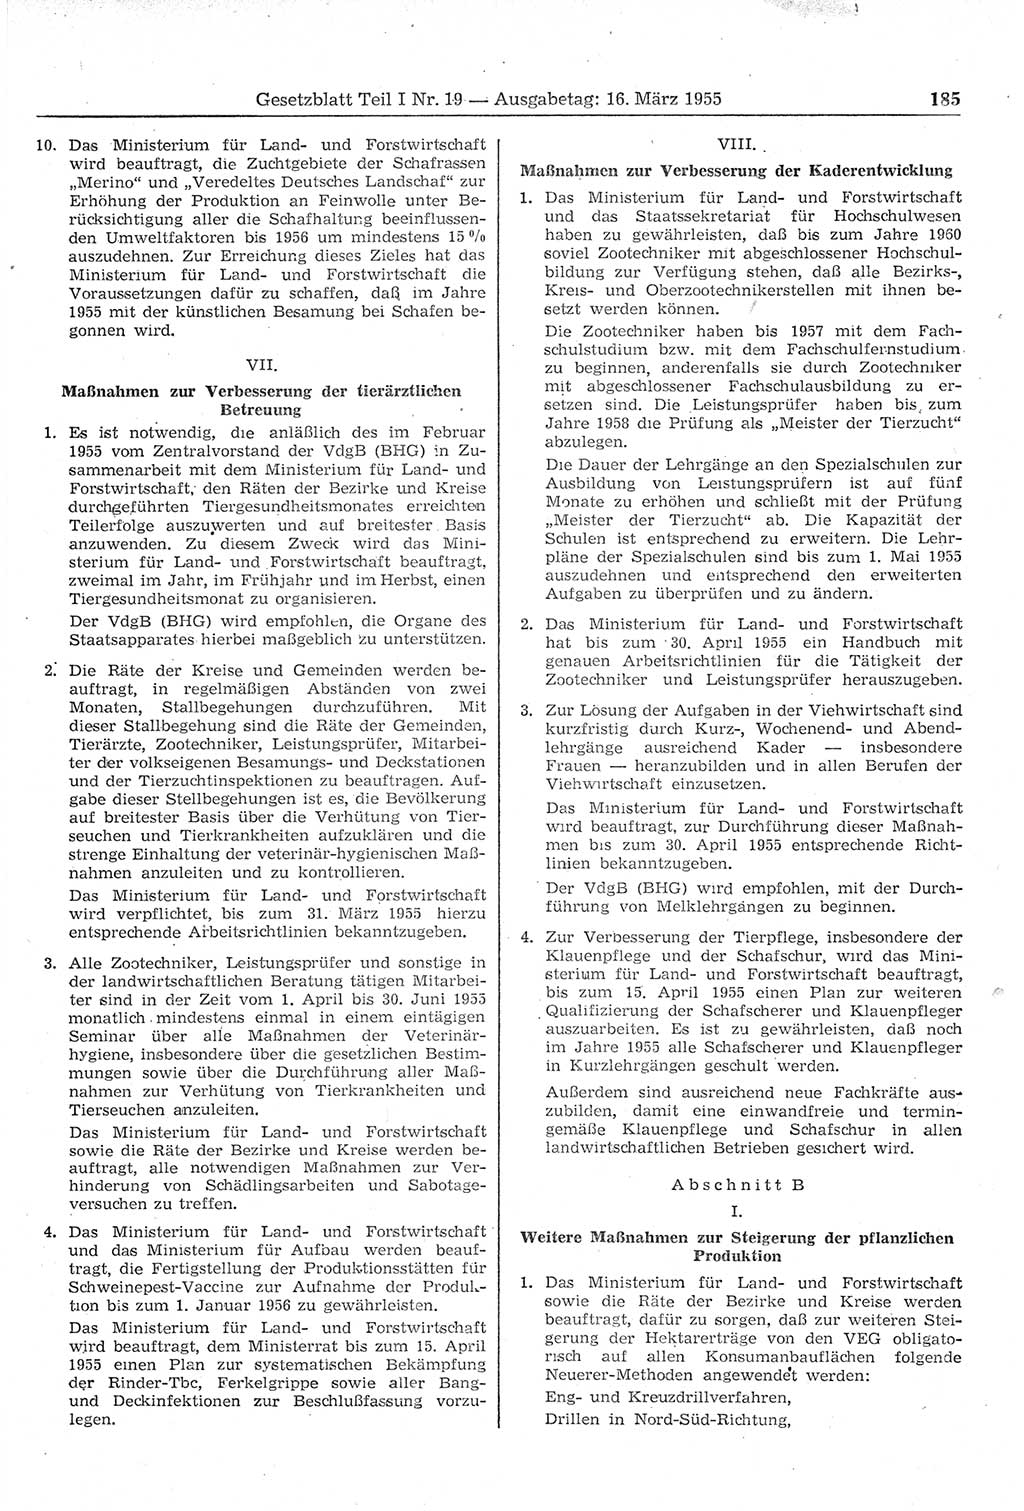 Gesetzblatt (GBl.) der Deutschen Demokratischen Republik (DDR) Teil Ⅰ 1955, Seite 185 (GBl. DDR Ⅰ 1955, S. 185)